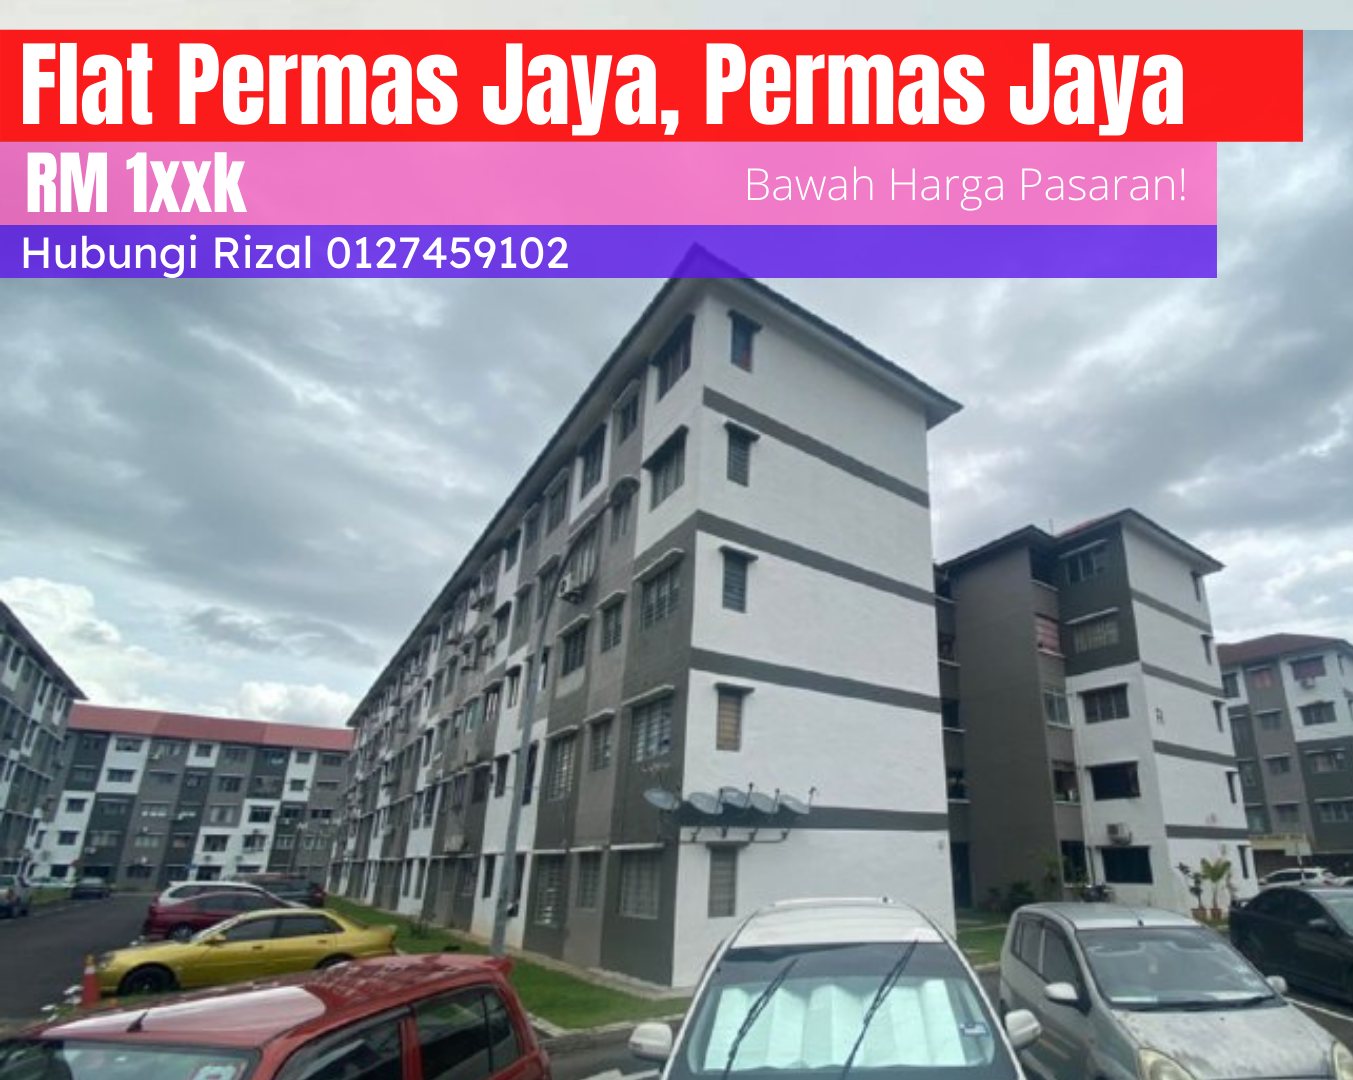 Flat Permas Jaya, Permas Jaya 7 , Bandar Baru Permas Jaya, Permas. Johor